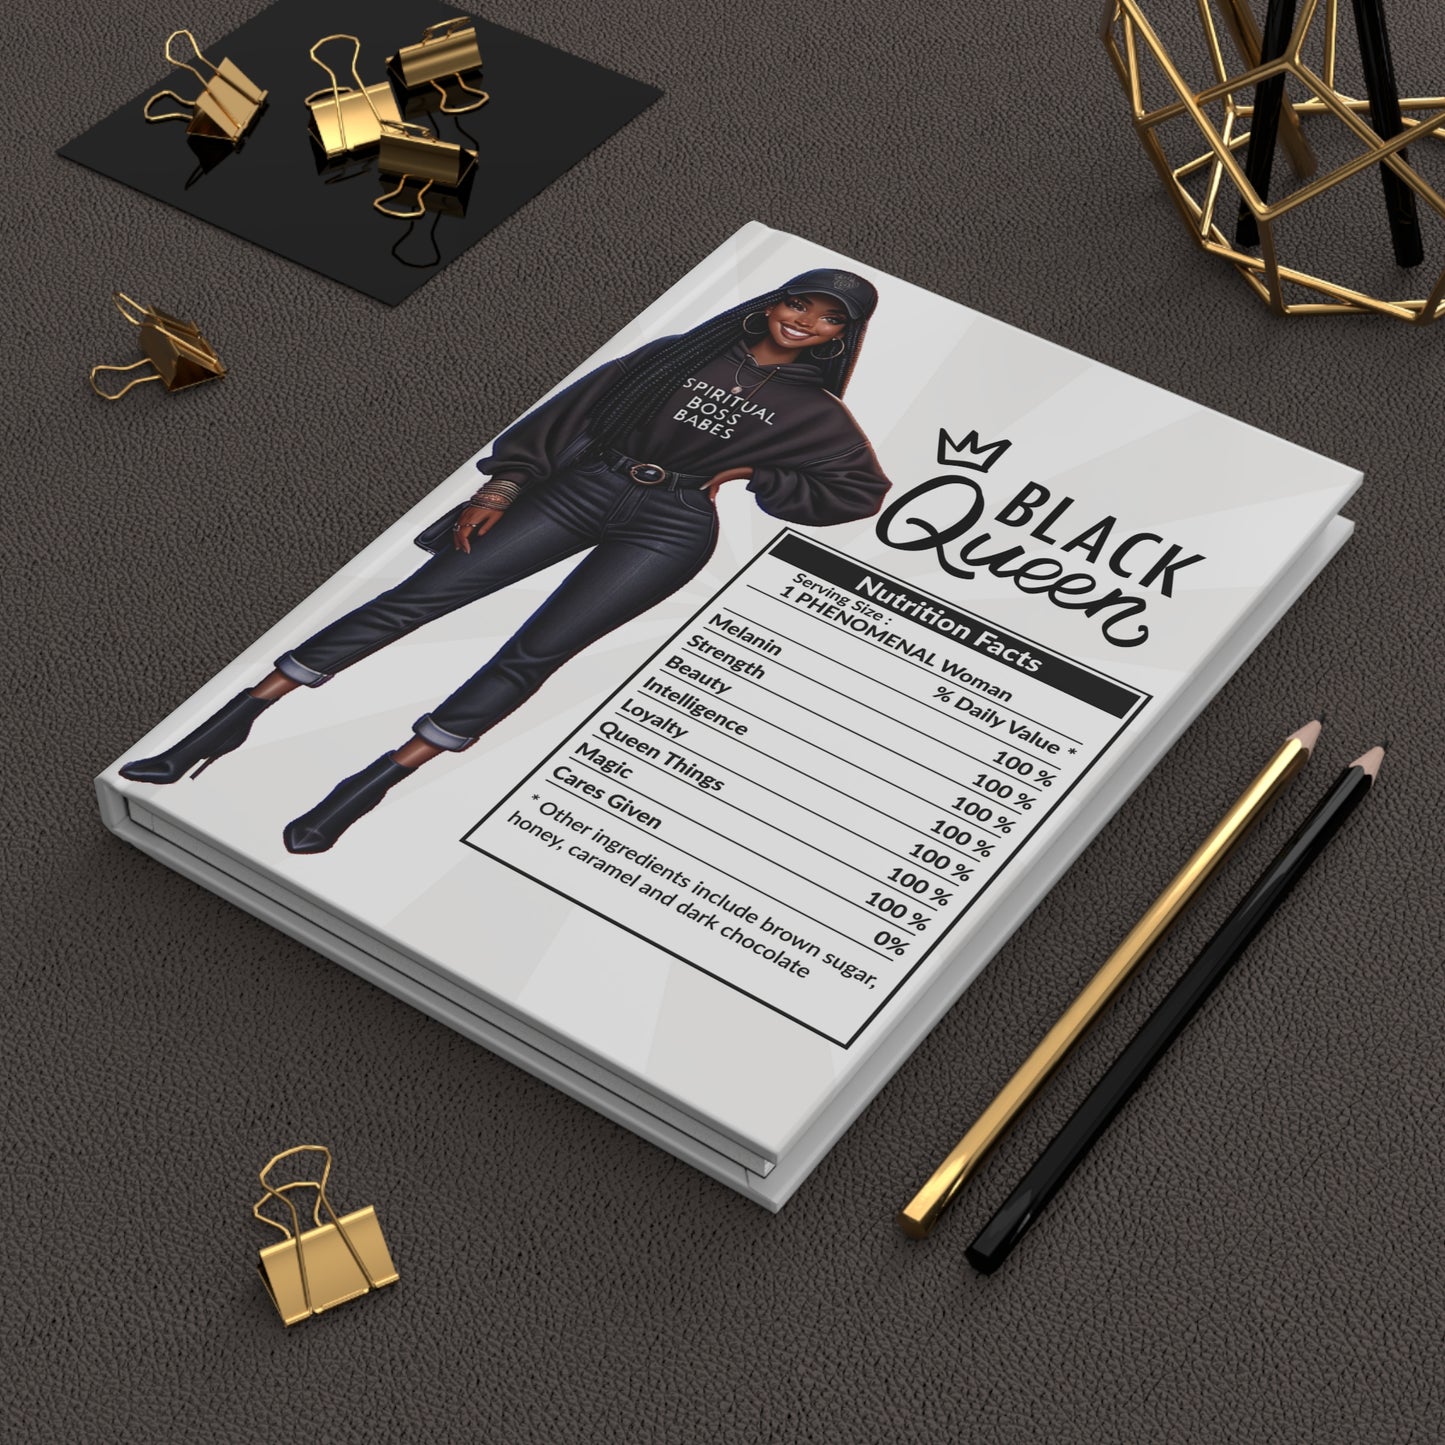 Black Queen Hardcover Journal